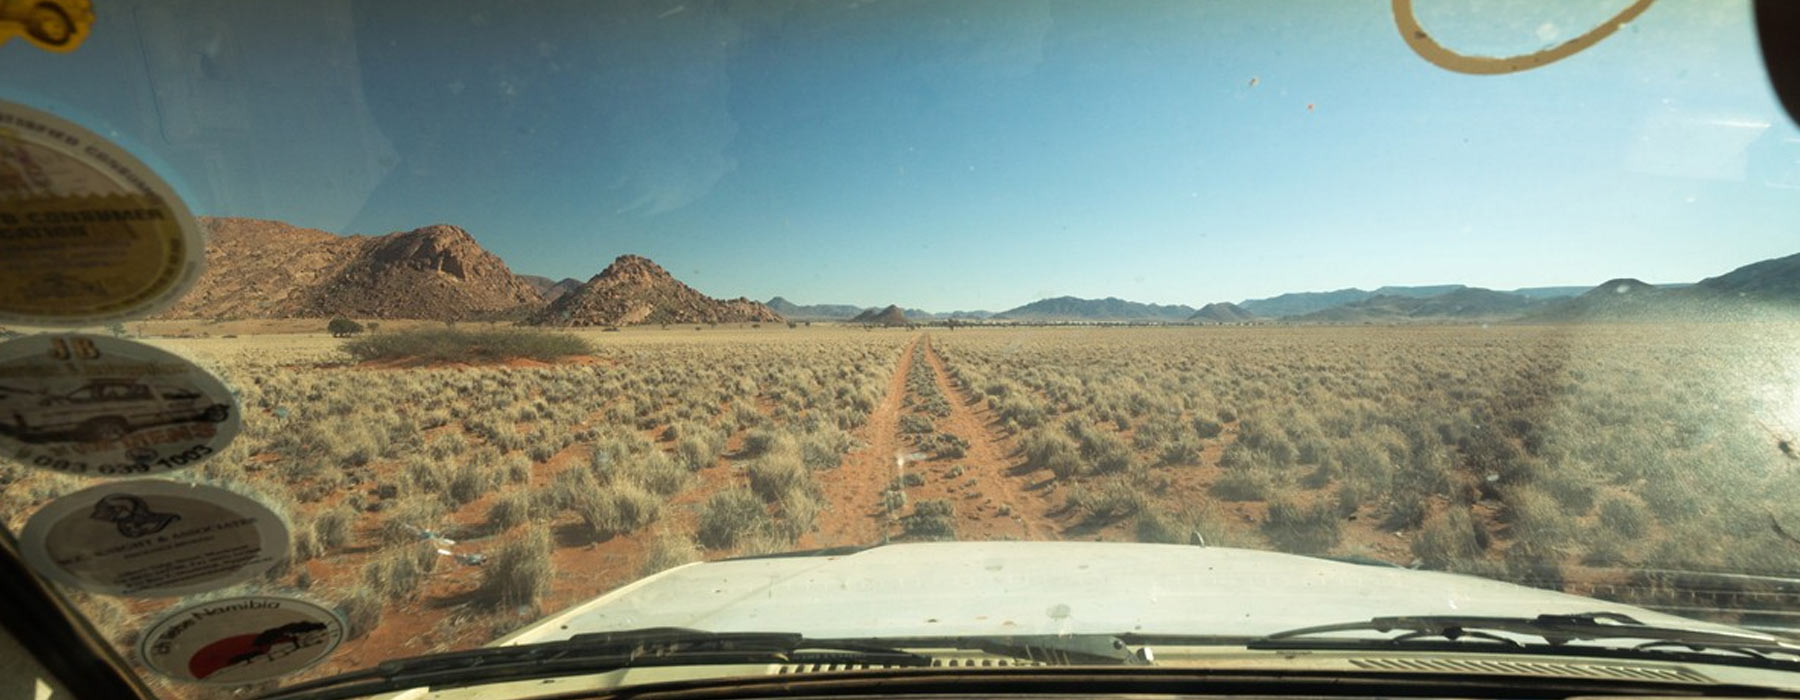 Voyage Autotour Namibie